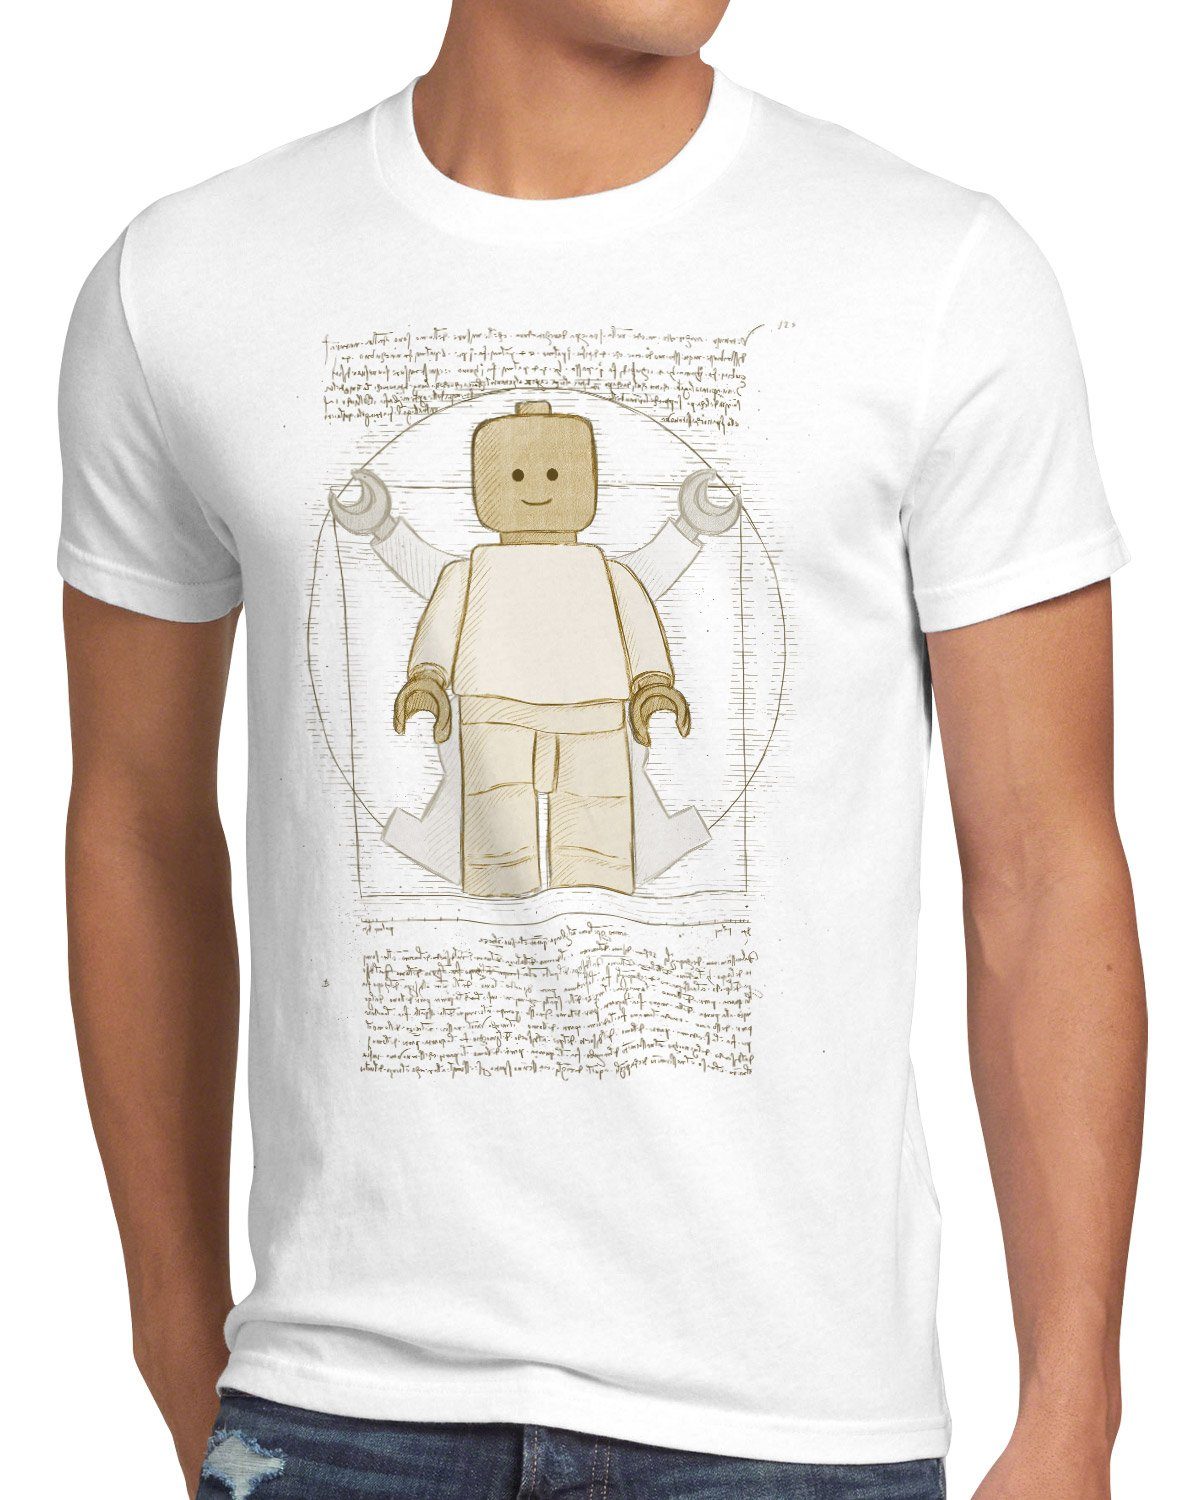 style3 Print-Shirt weiß vinci Klemmbausteinfigur Herren T-Shirt mensch Vitruvianische da